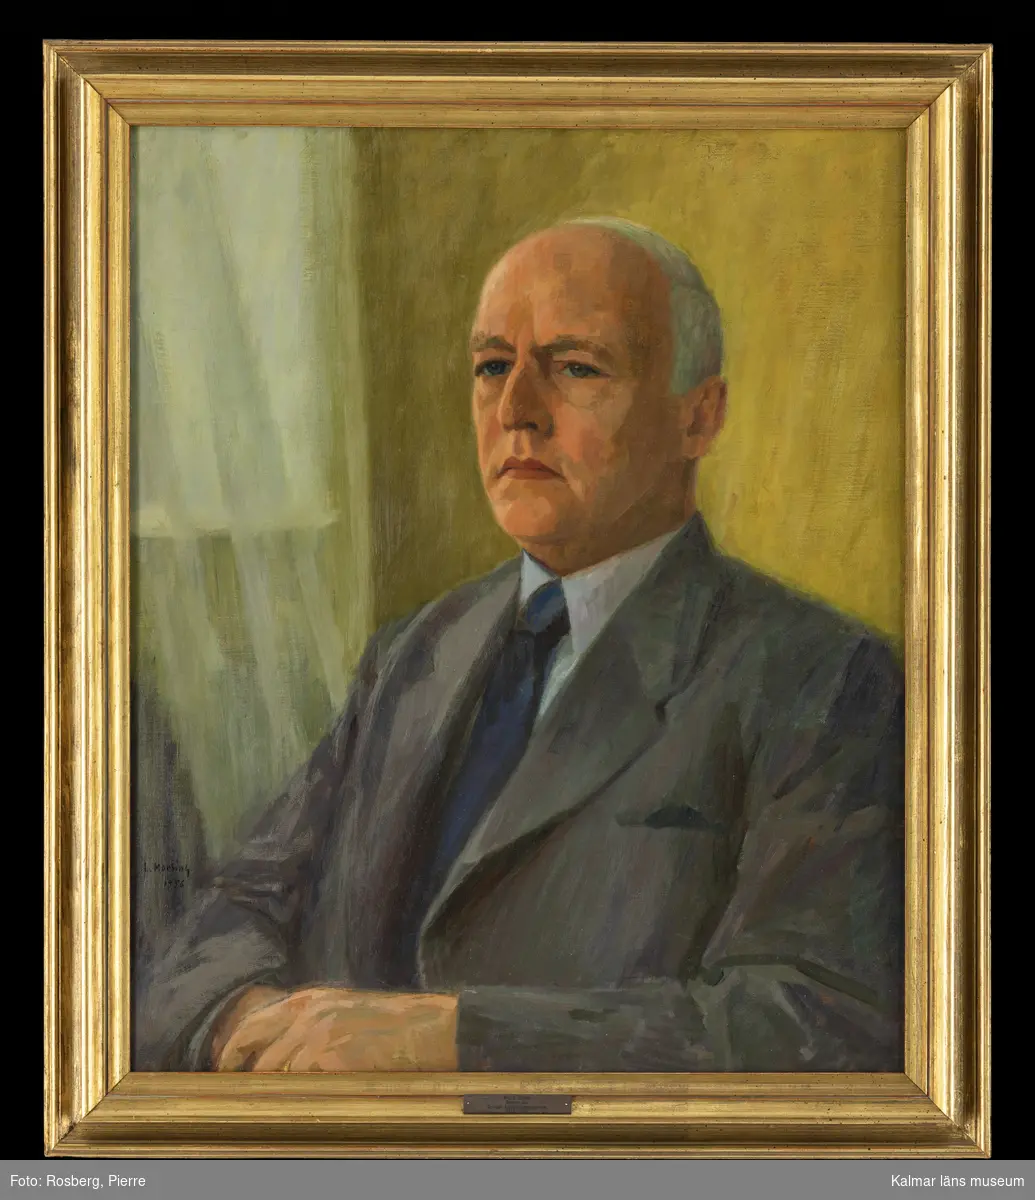 Porträtt föreställande Nils G. Ohlson som var verksam som rektor på Rostads folkskoleseminarium i Kalmar 1945-1957.